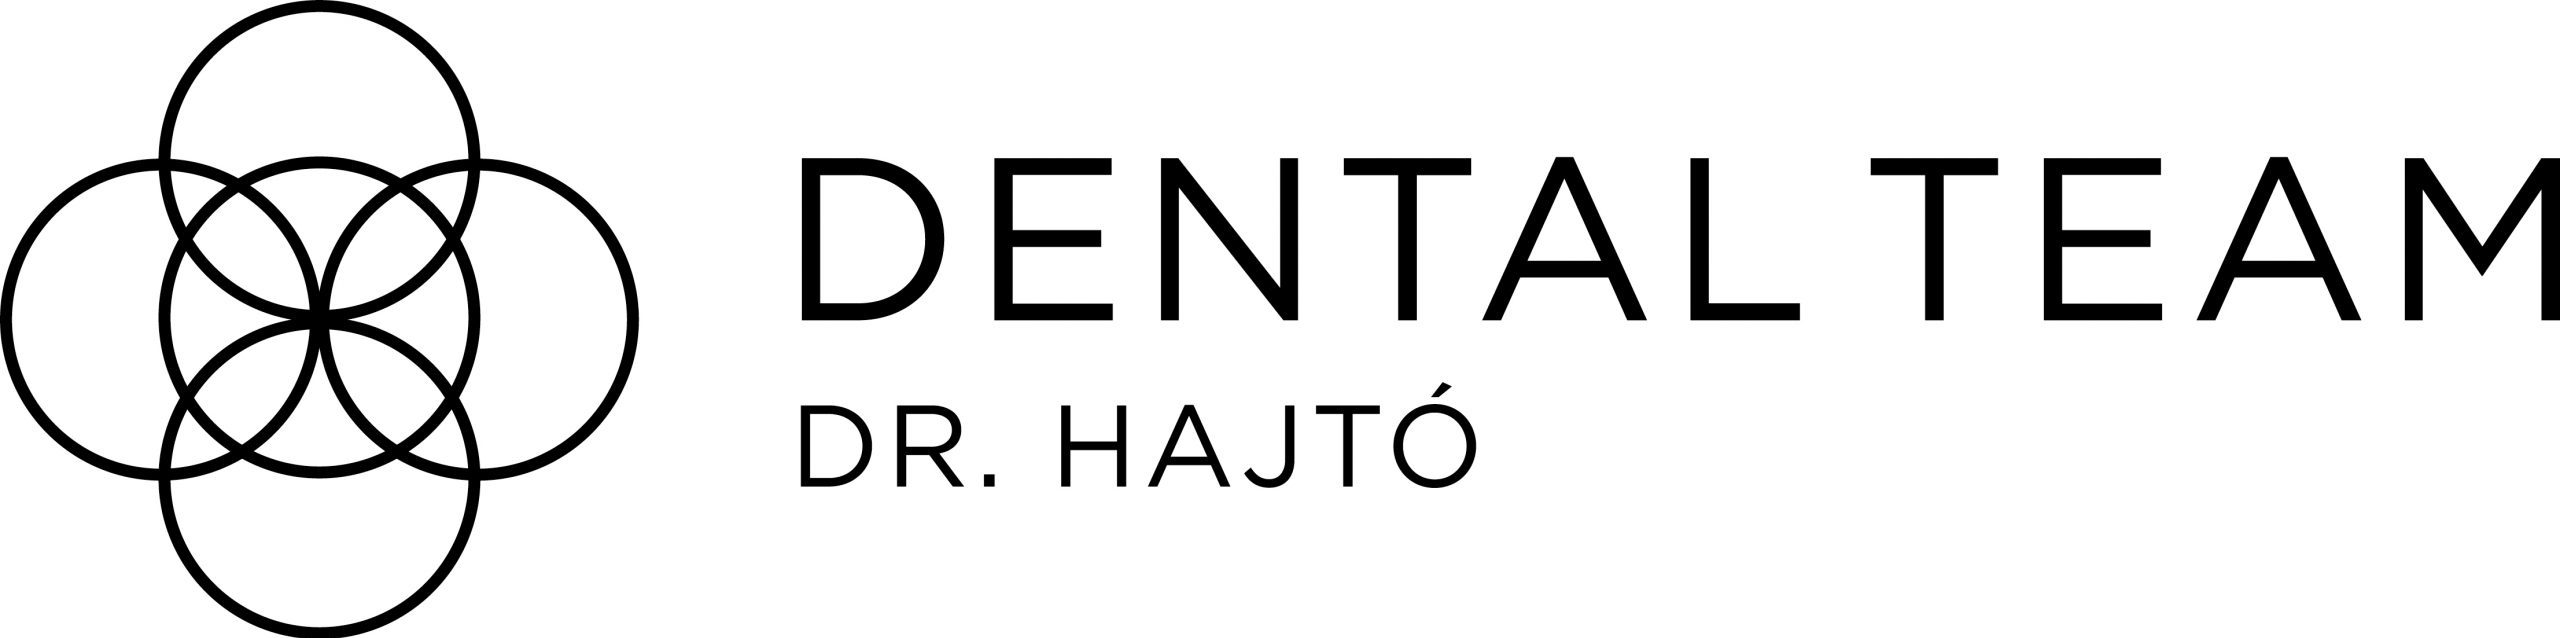 Dr. Hajto | Eine weitere Team Dental Website